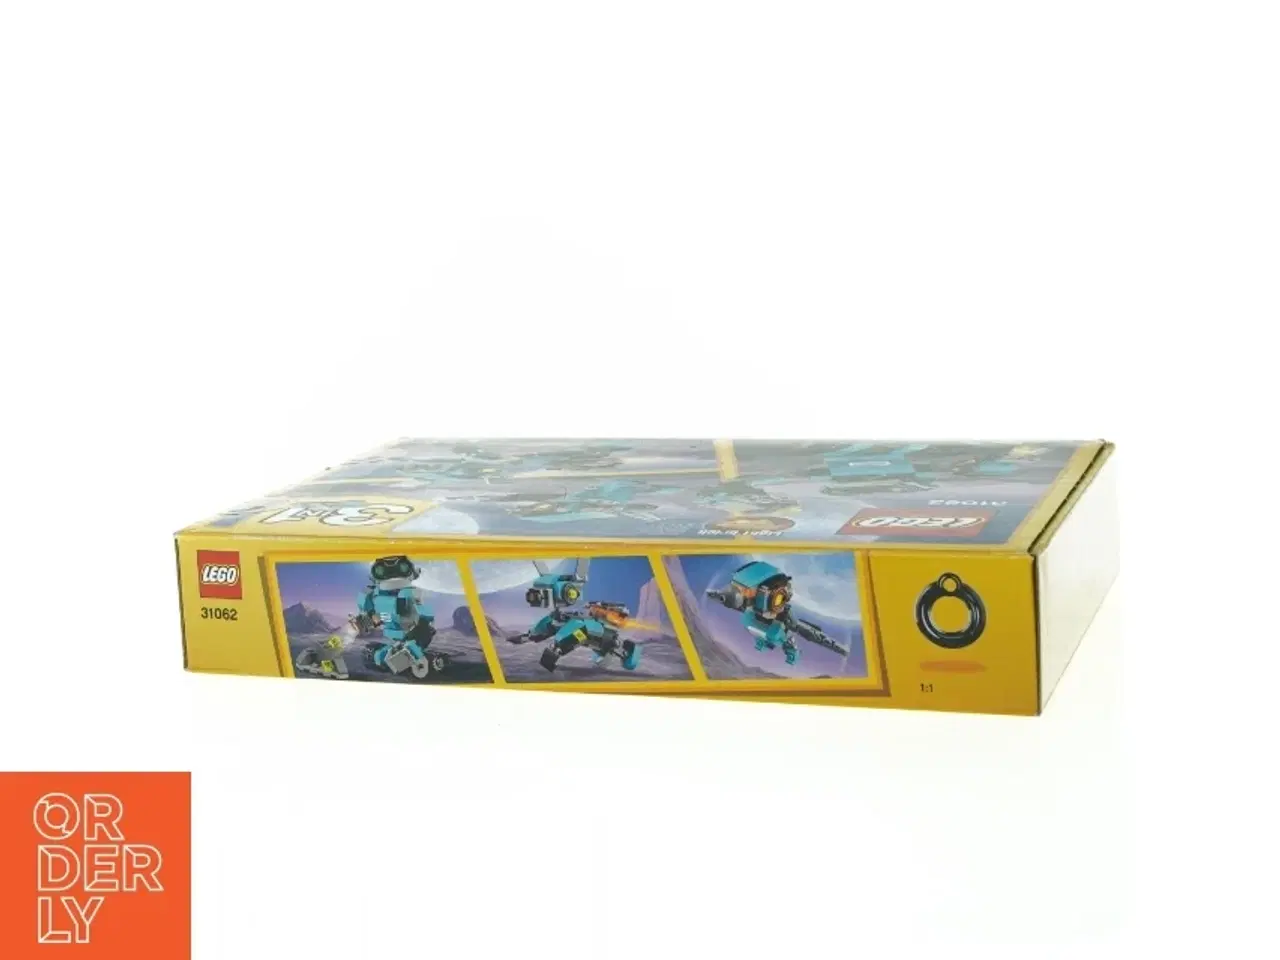 Billede 3 - Lego creator (tre i en) - model 31062 (Uåbnet) fra Lego (str. 26 x 19 x 5 cm)